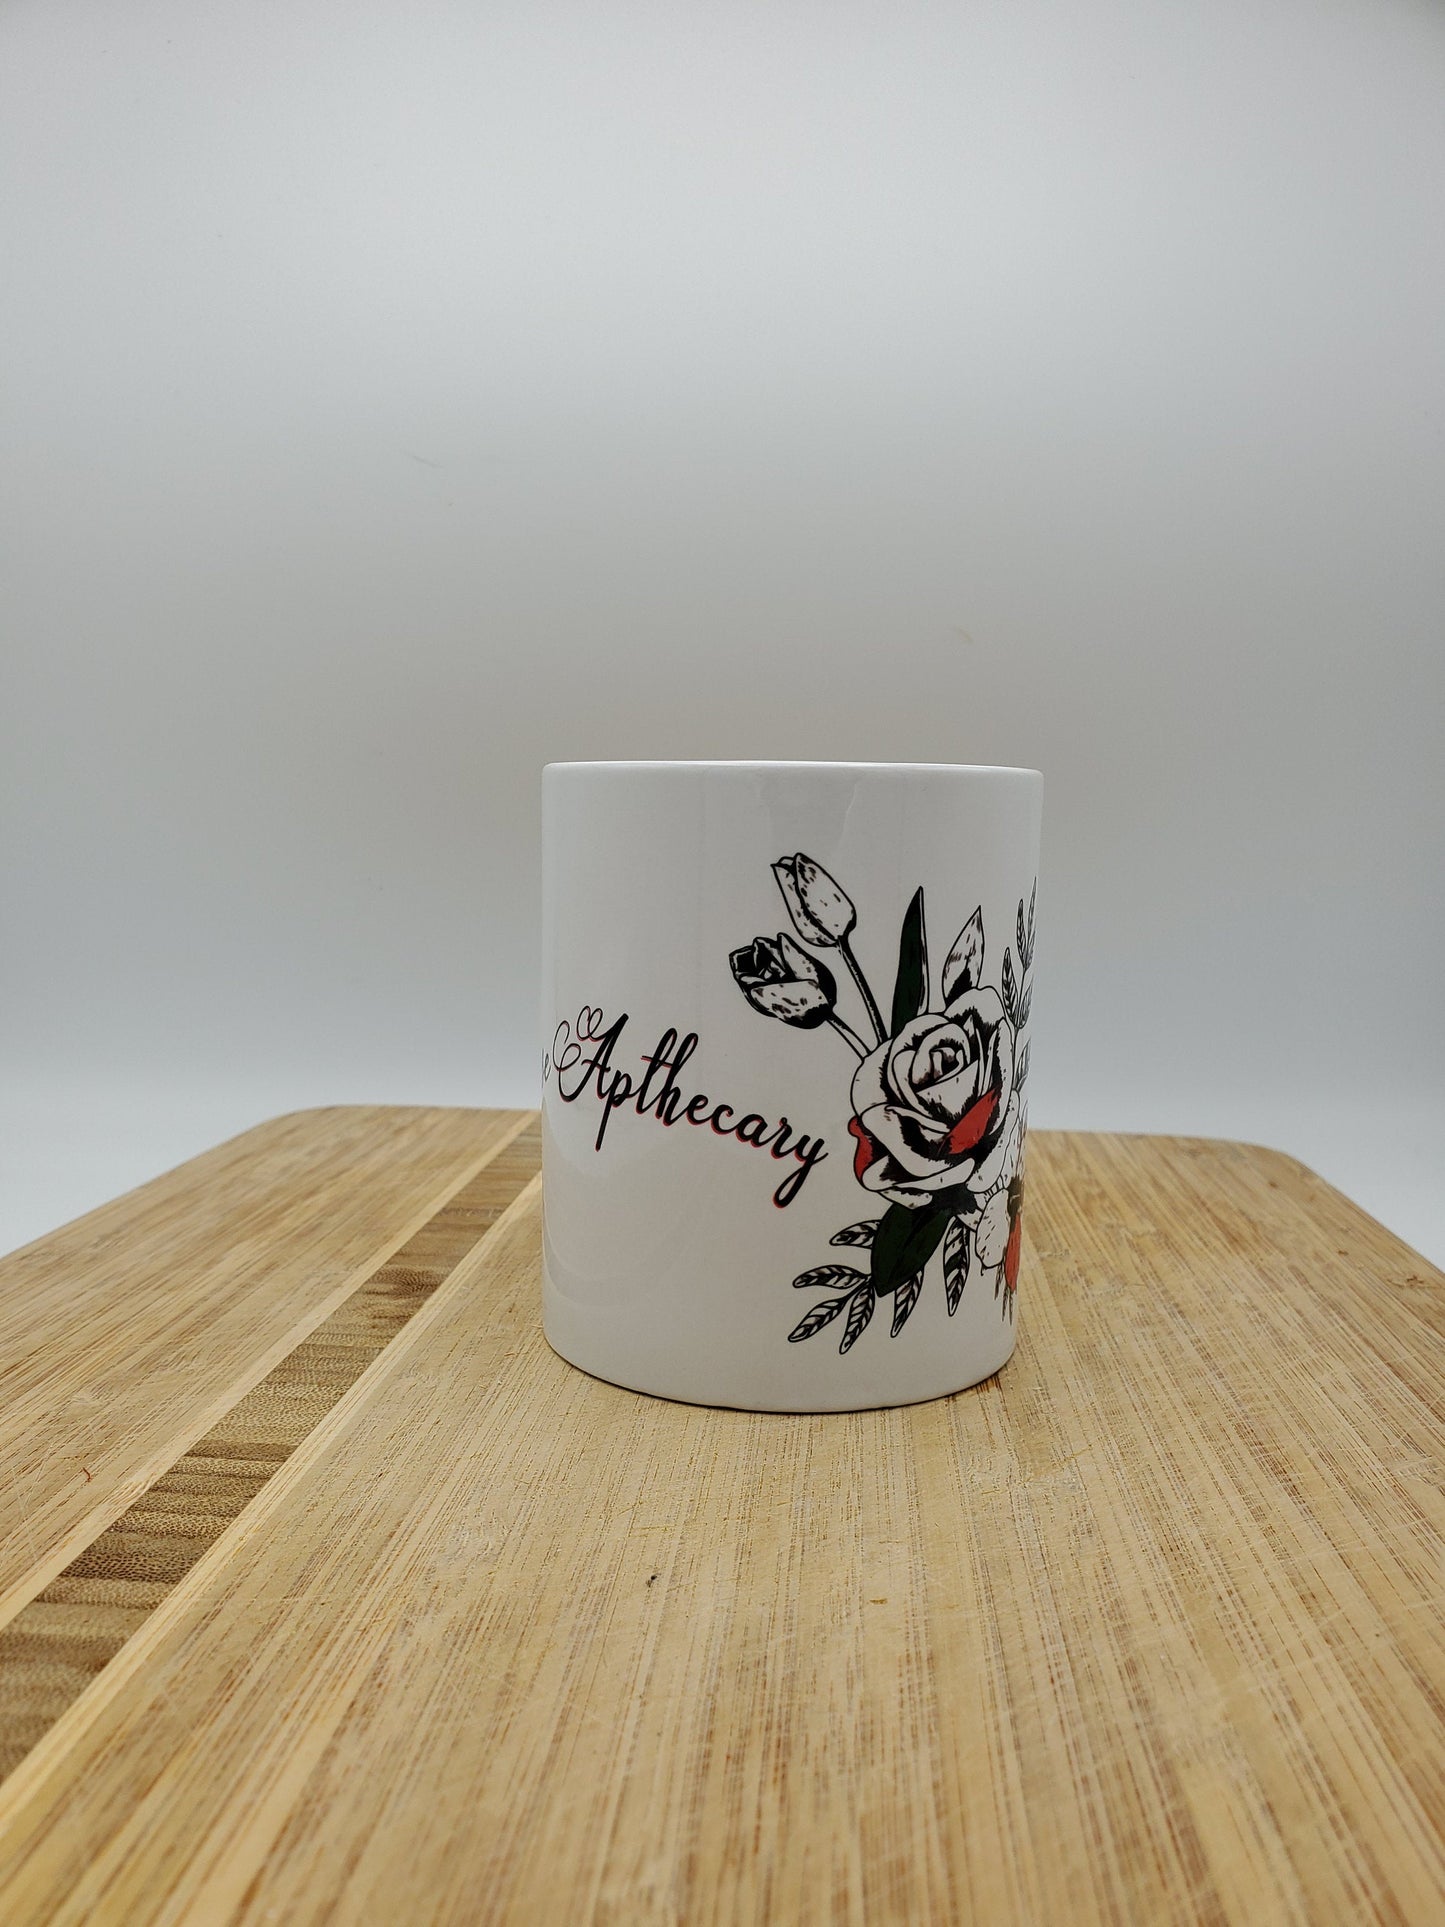 Rose Apothecary Mug, Holiday Gift, Seasonal Mug, Personalized Cup, Custom Coffee Mug, Add Your Name, Artistic Creative Mug